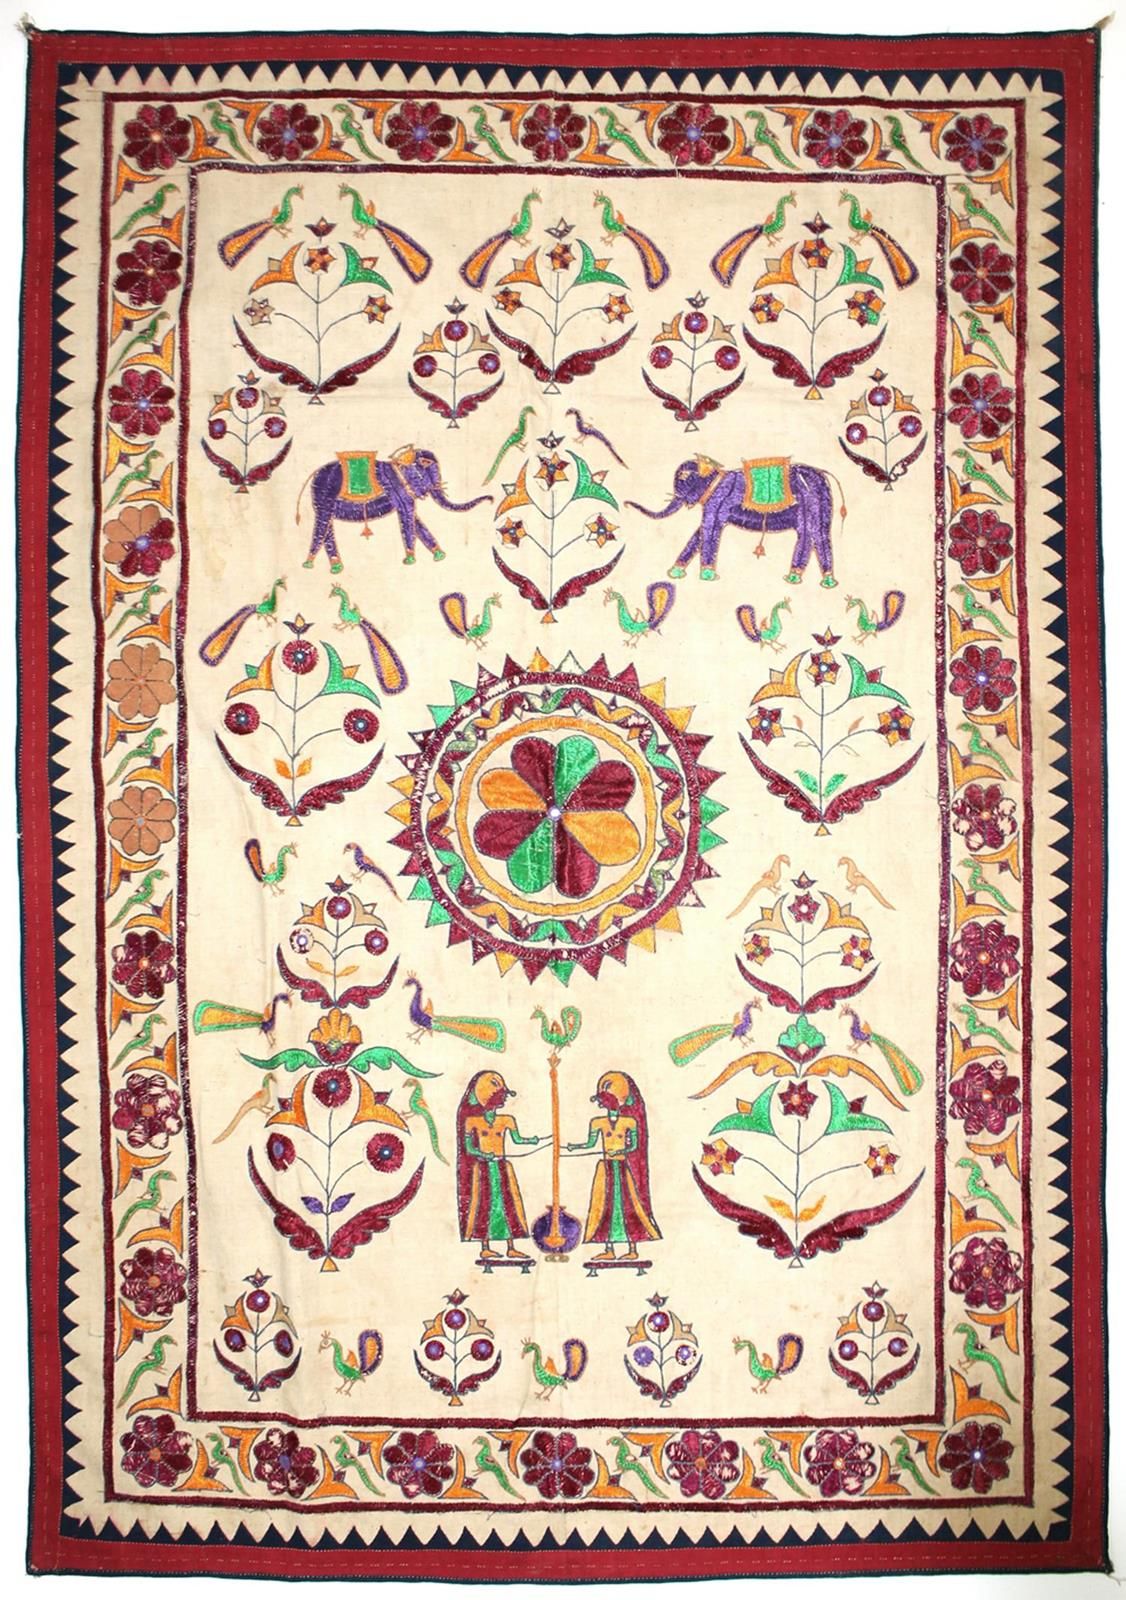 Rajasthan Indien Wandbehänge. Paar prächtige, Bestickte Wandbehänge mit u.A. Leb&hellip;